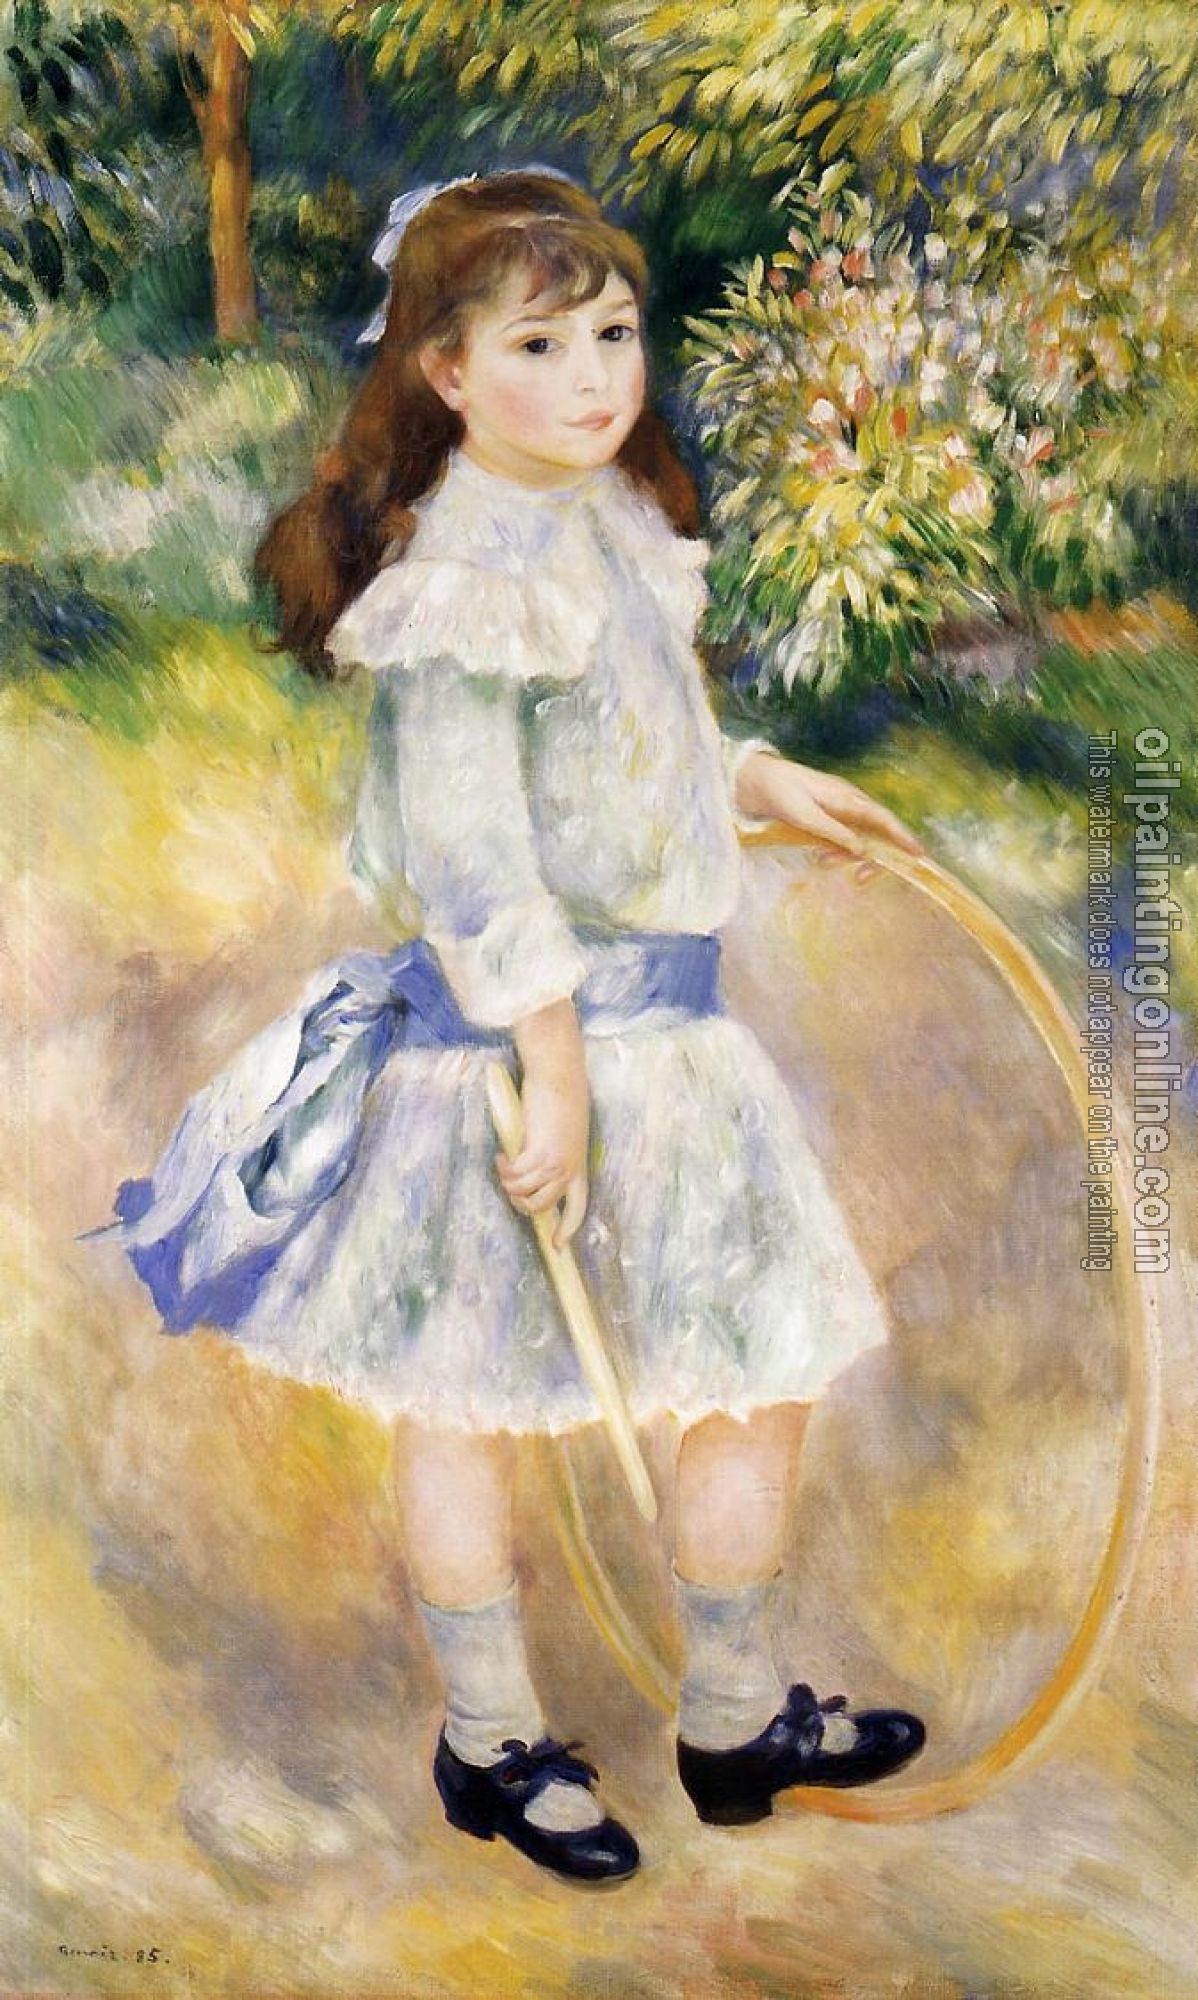 Renoir, Pierre Auguste - Girl with a Hoop